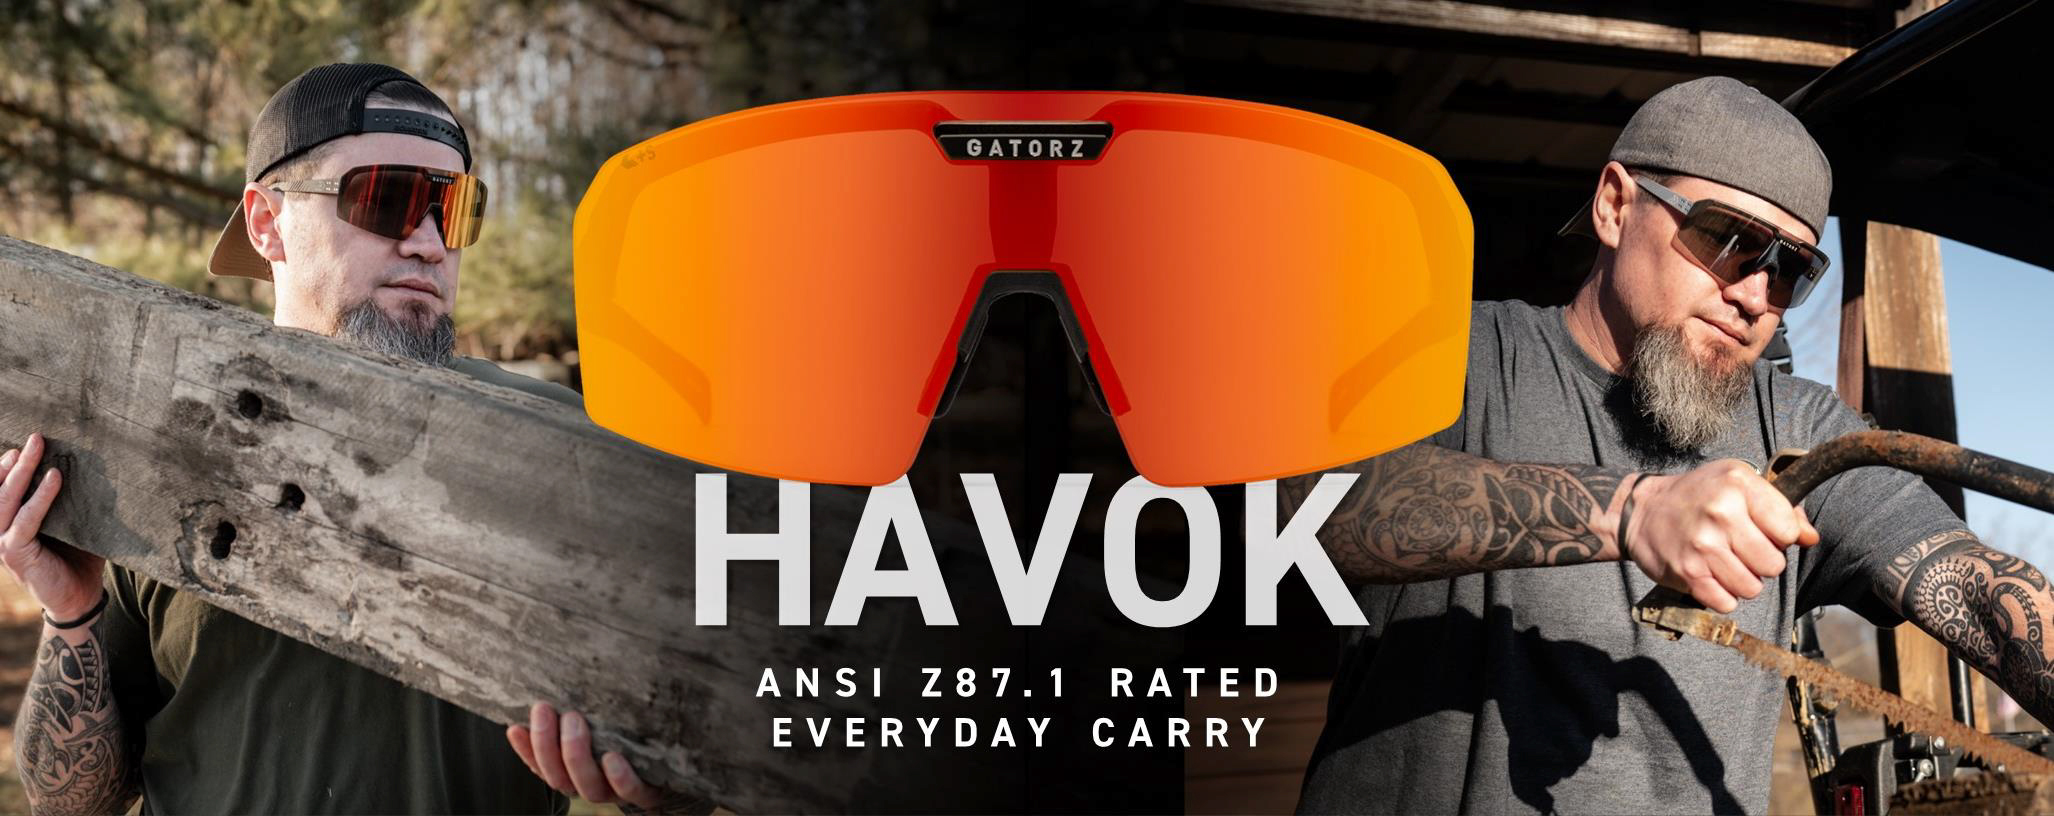 全種ANSIz87.1対応『HAVOK(ハボック)』新発売のサブ画像1